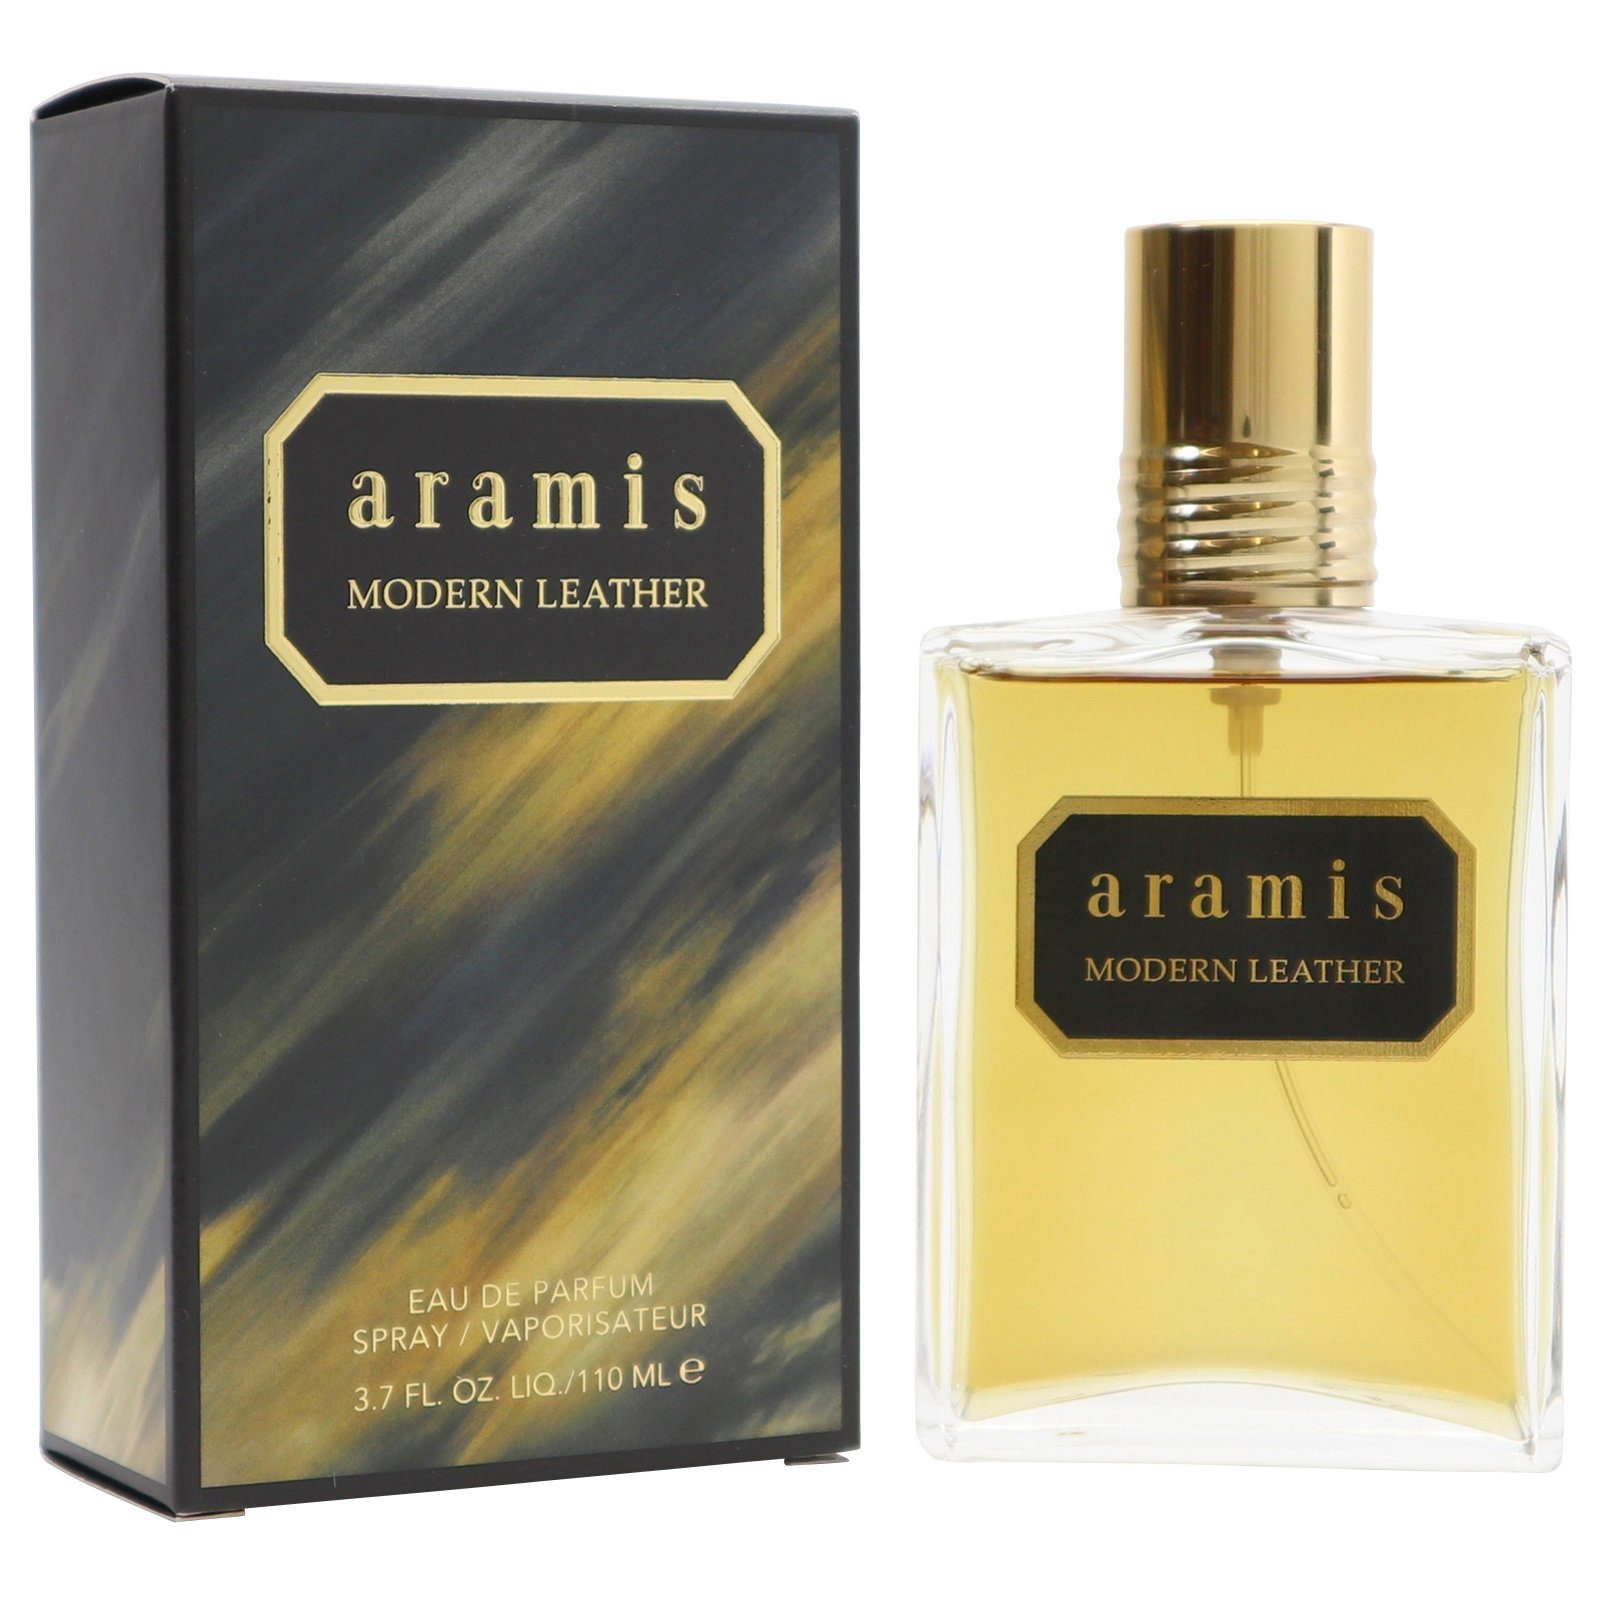 Vertrauenswürdige Qualität aramis Eau de Parfum de Eau Modern ml 110 Spray Parfum Aramis Leather